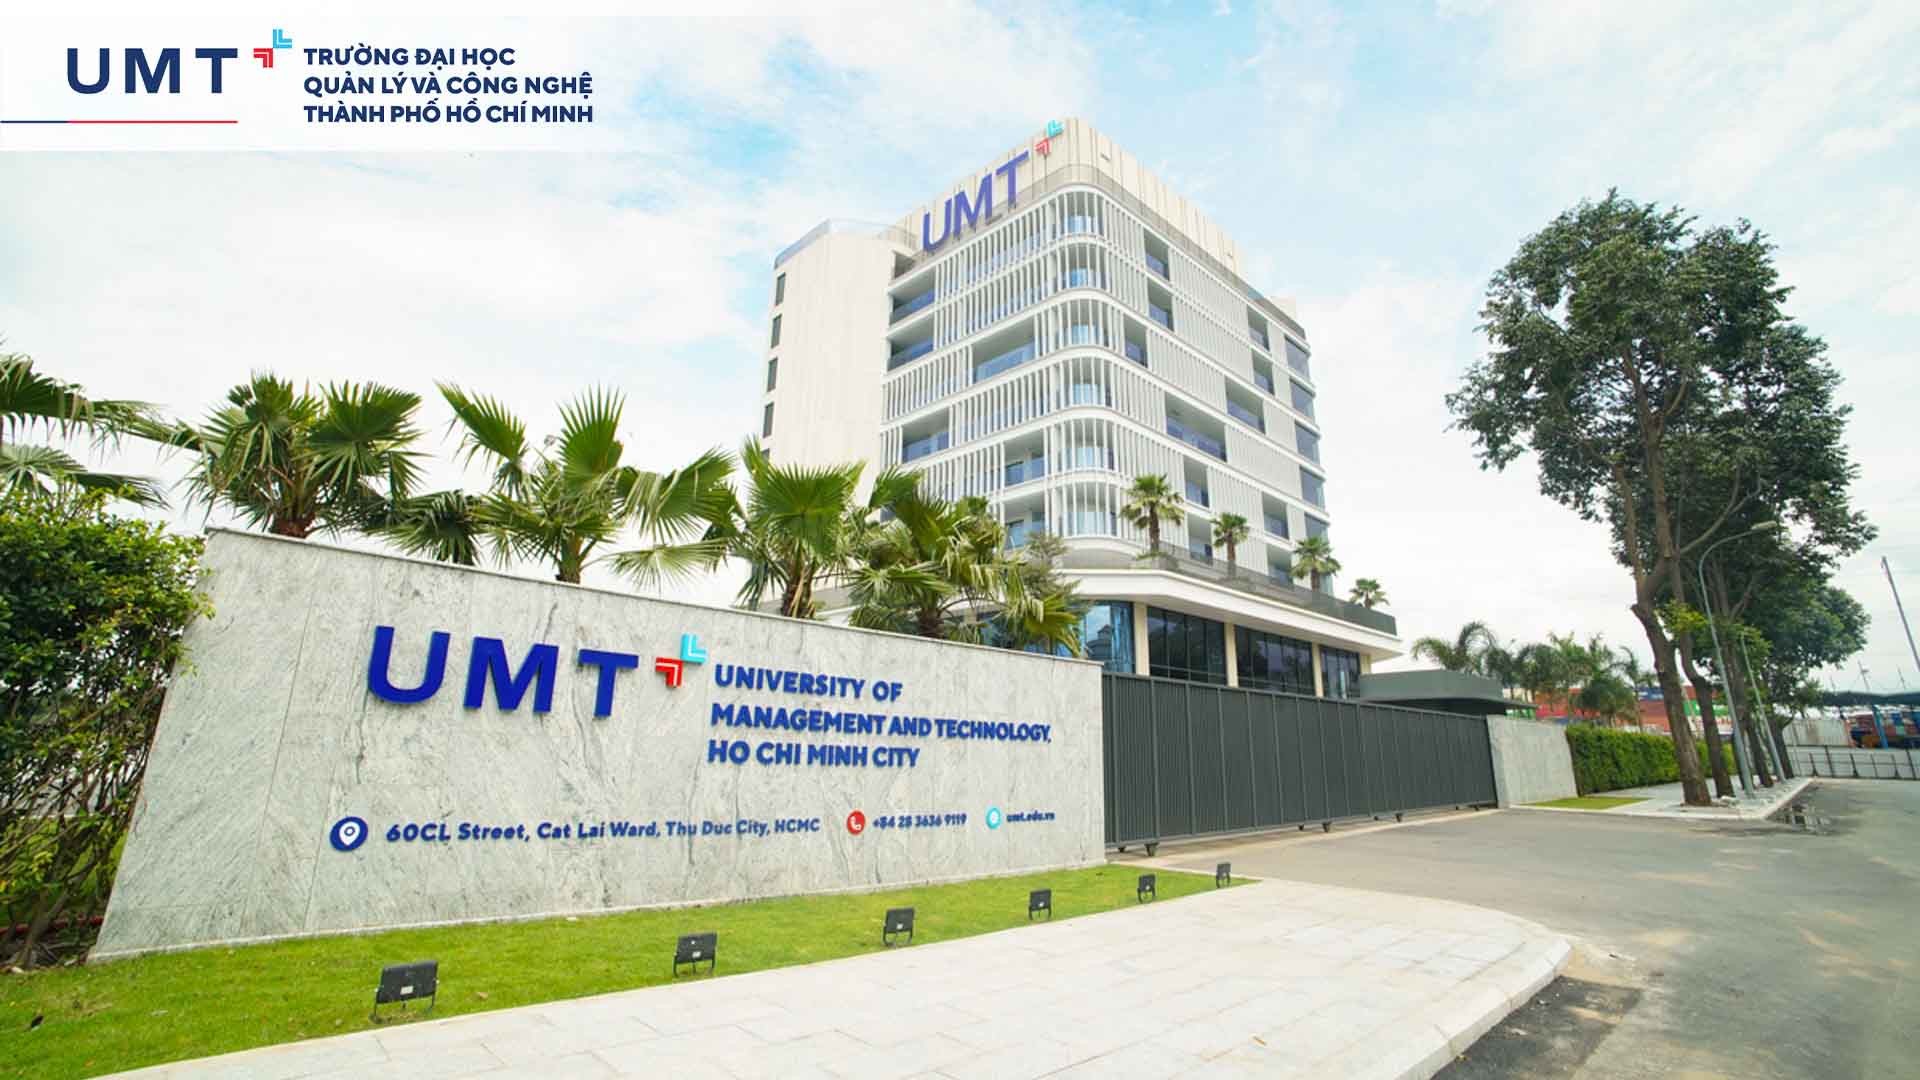 Trường Đại học UMT - Môi trường giáo dục đại học mới toàn diện, chuẩn quốc tế